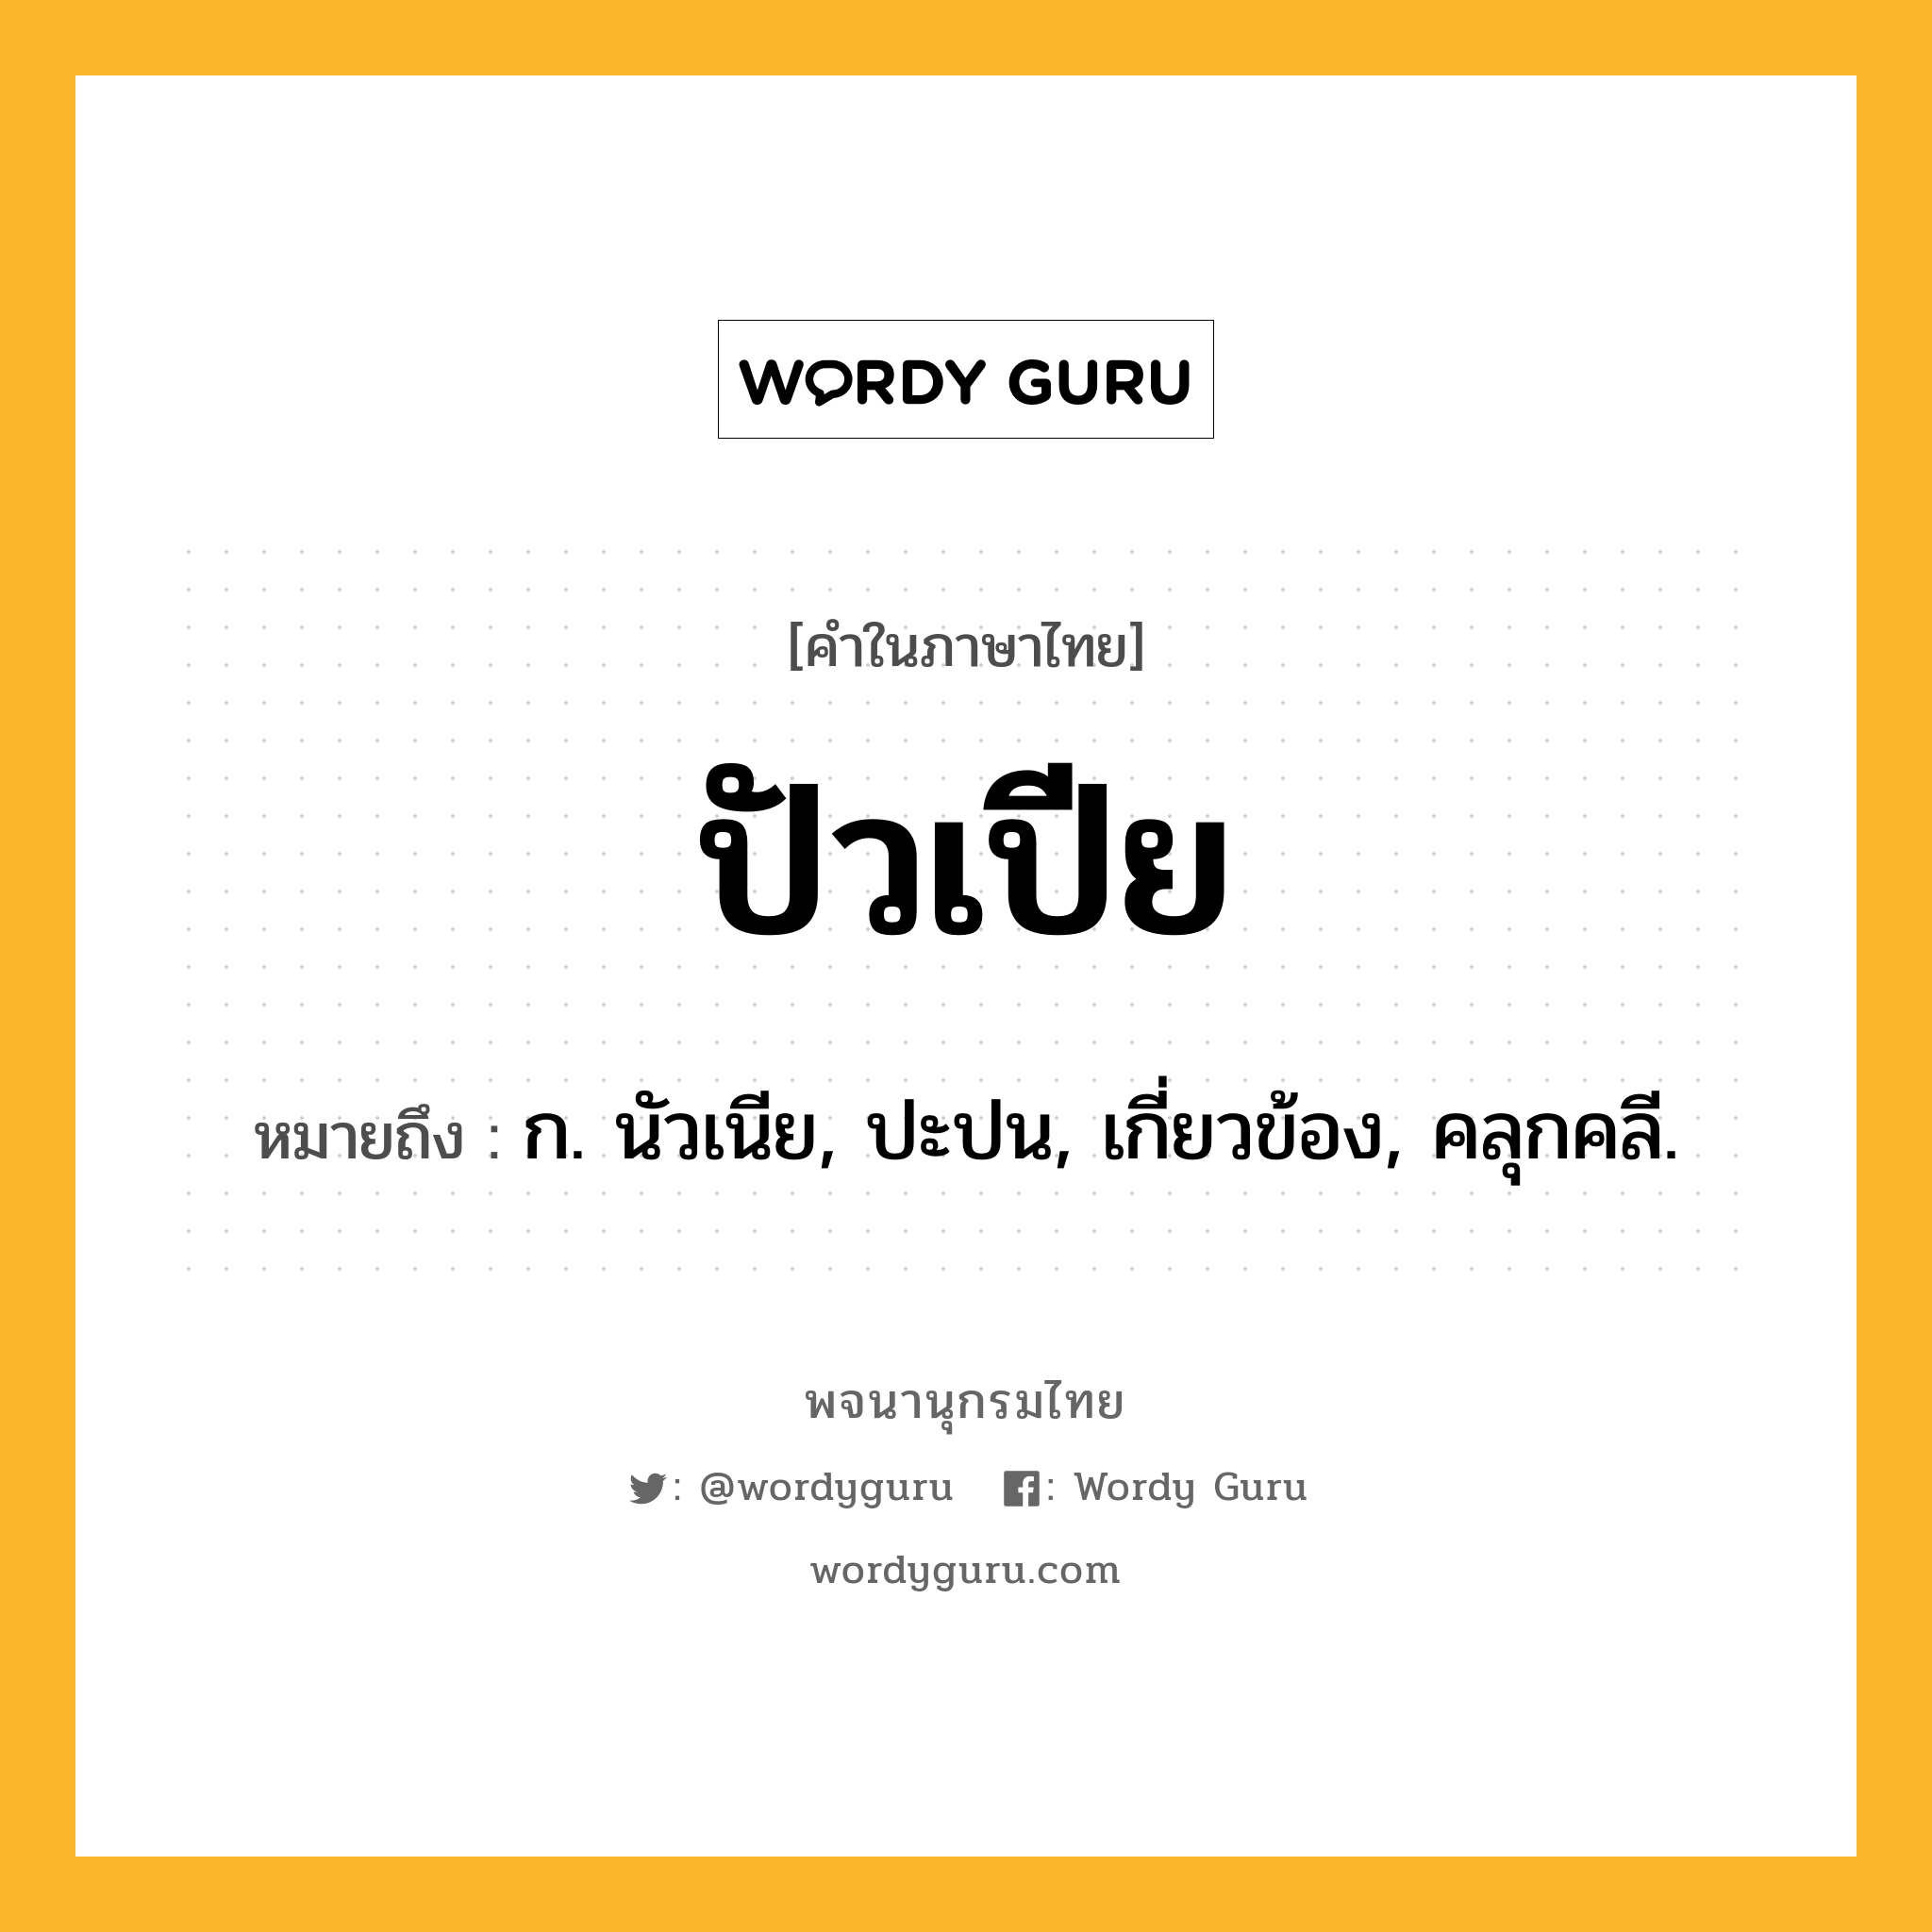 ปัวเปีย หมายถึงอะไร?, คำในภาษาไทย ปัวเปีย หมายถึง ก. นัวเนีย, ปะปน, เกี่ยวข้อง, คลุกคลี.